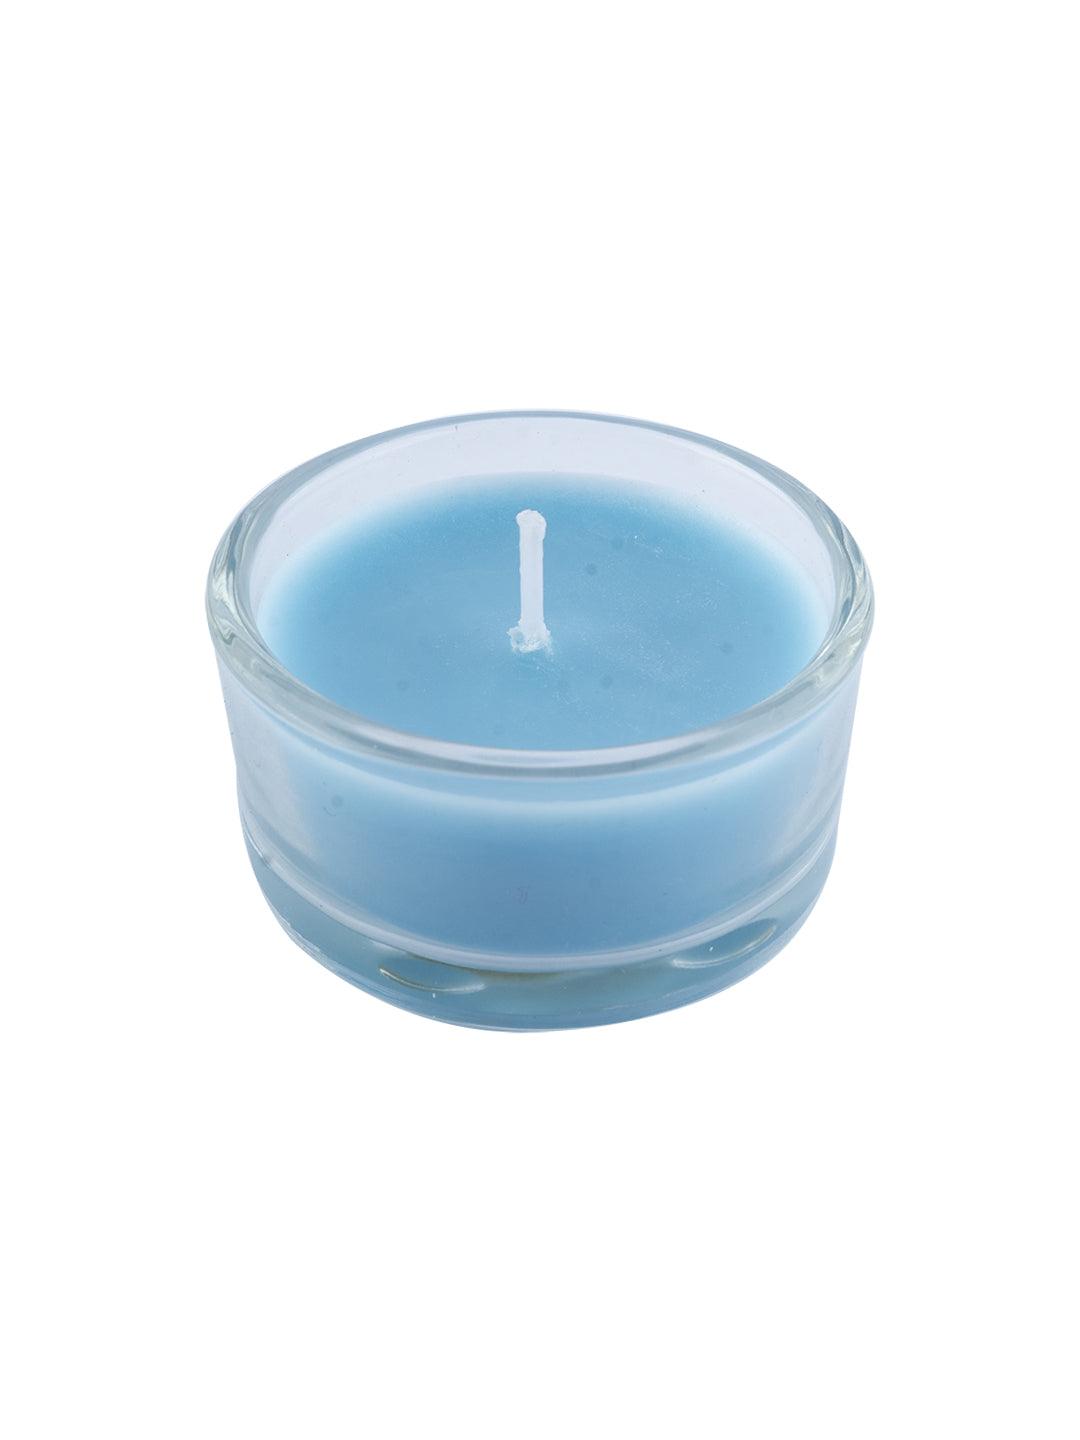 Fragrance Votive Candles (Pack Of 4) - Market99 - MARKET 99